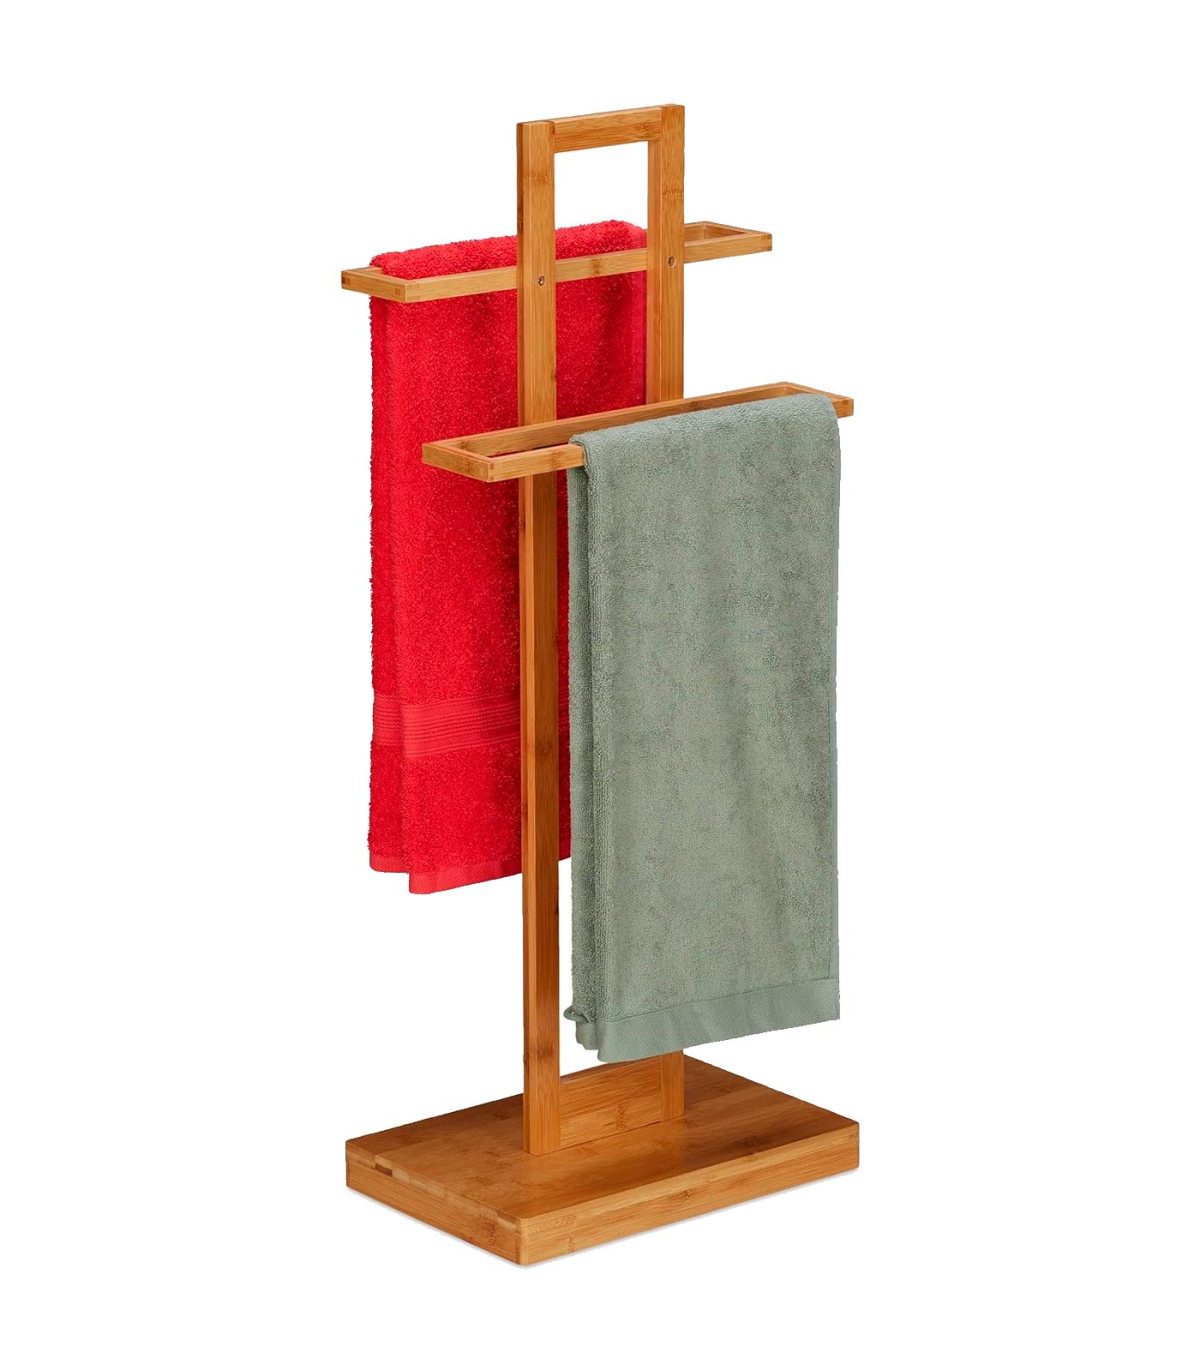 Toallero de bambú de 40 niveles de 3 niveles, soporte de edredón o manta,  extra alto, independiente de madera maciza, con estante inferior de